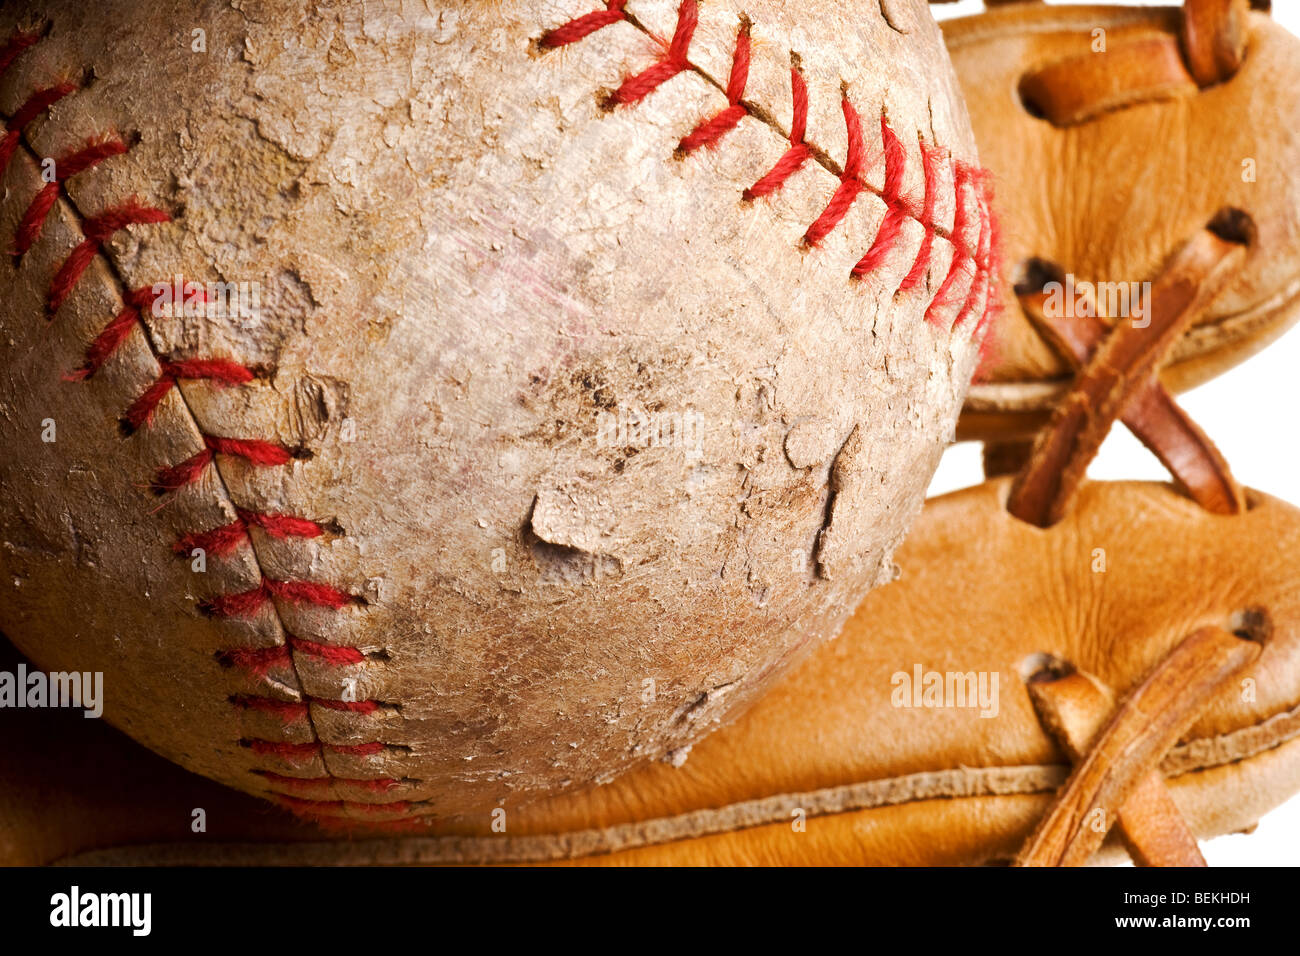 Il baseball in guanto mezzo isolato su sfondo bianco Foto Stock